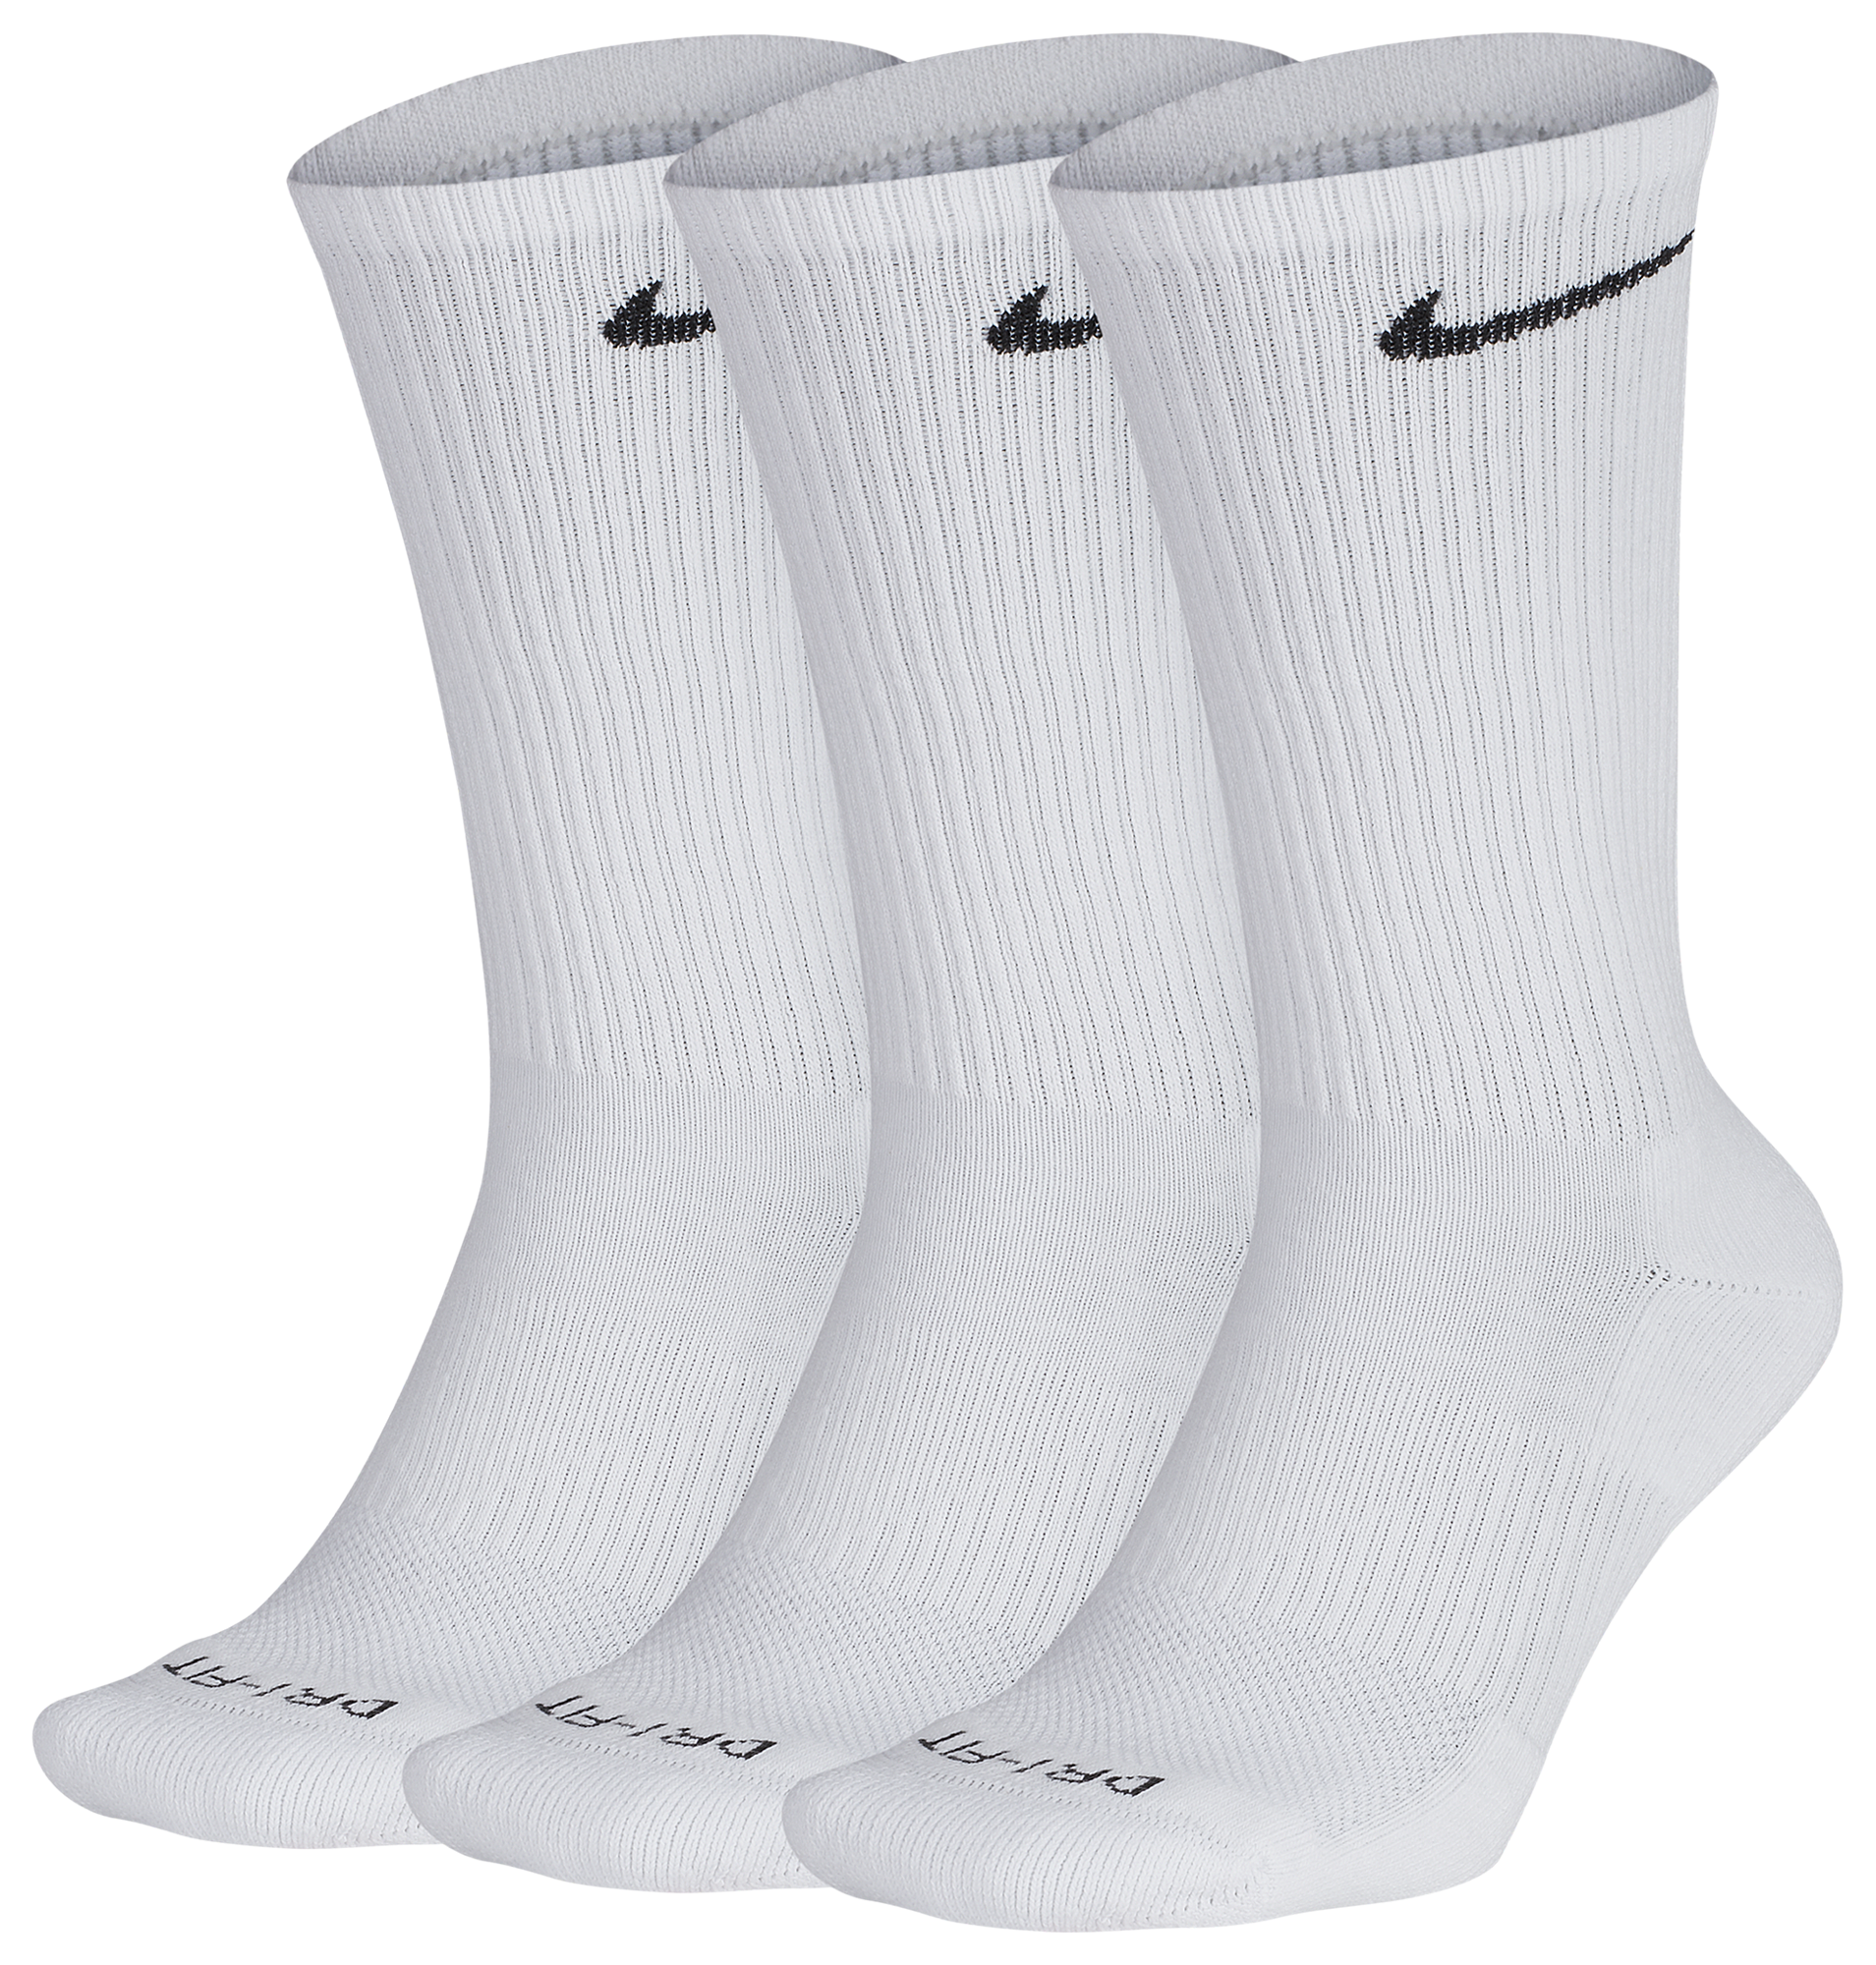 mens white nike socks